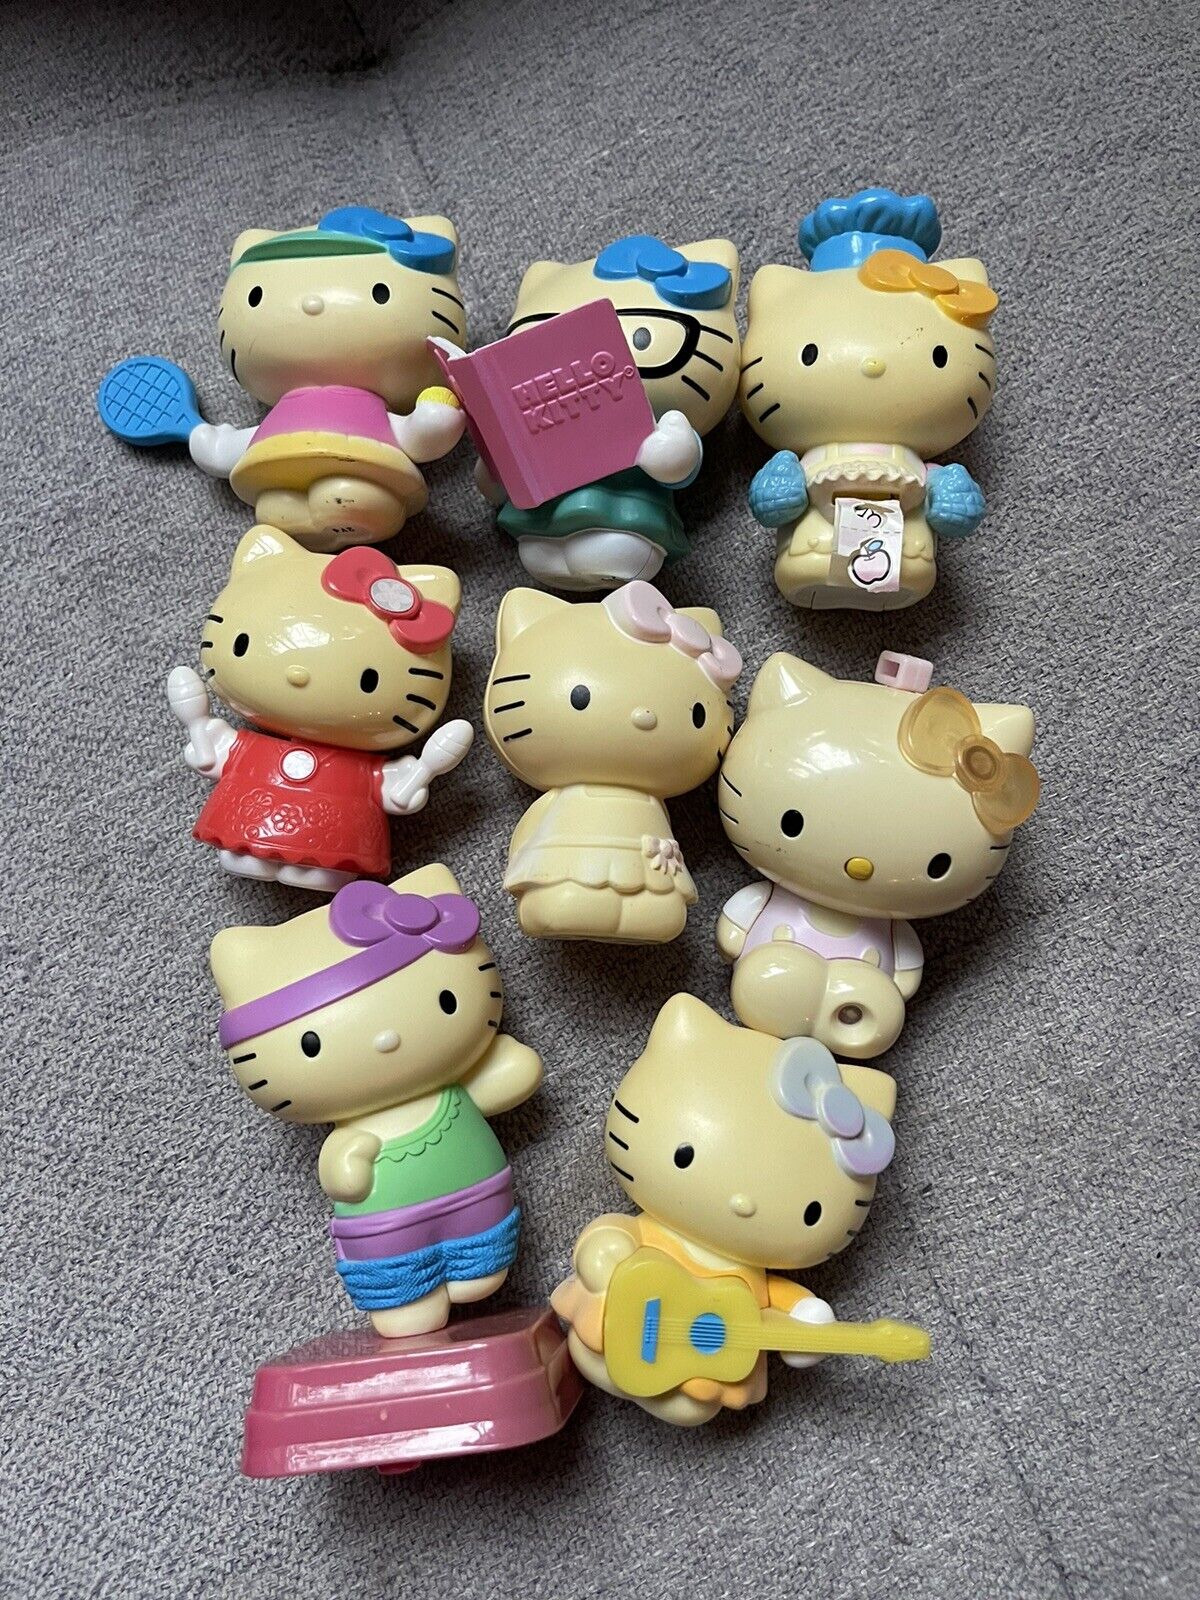 Sanrio Hello Kitty 2013 McDonald’s Toys Collection